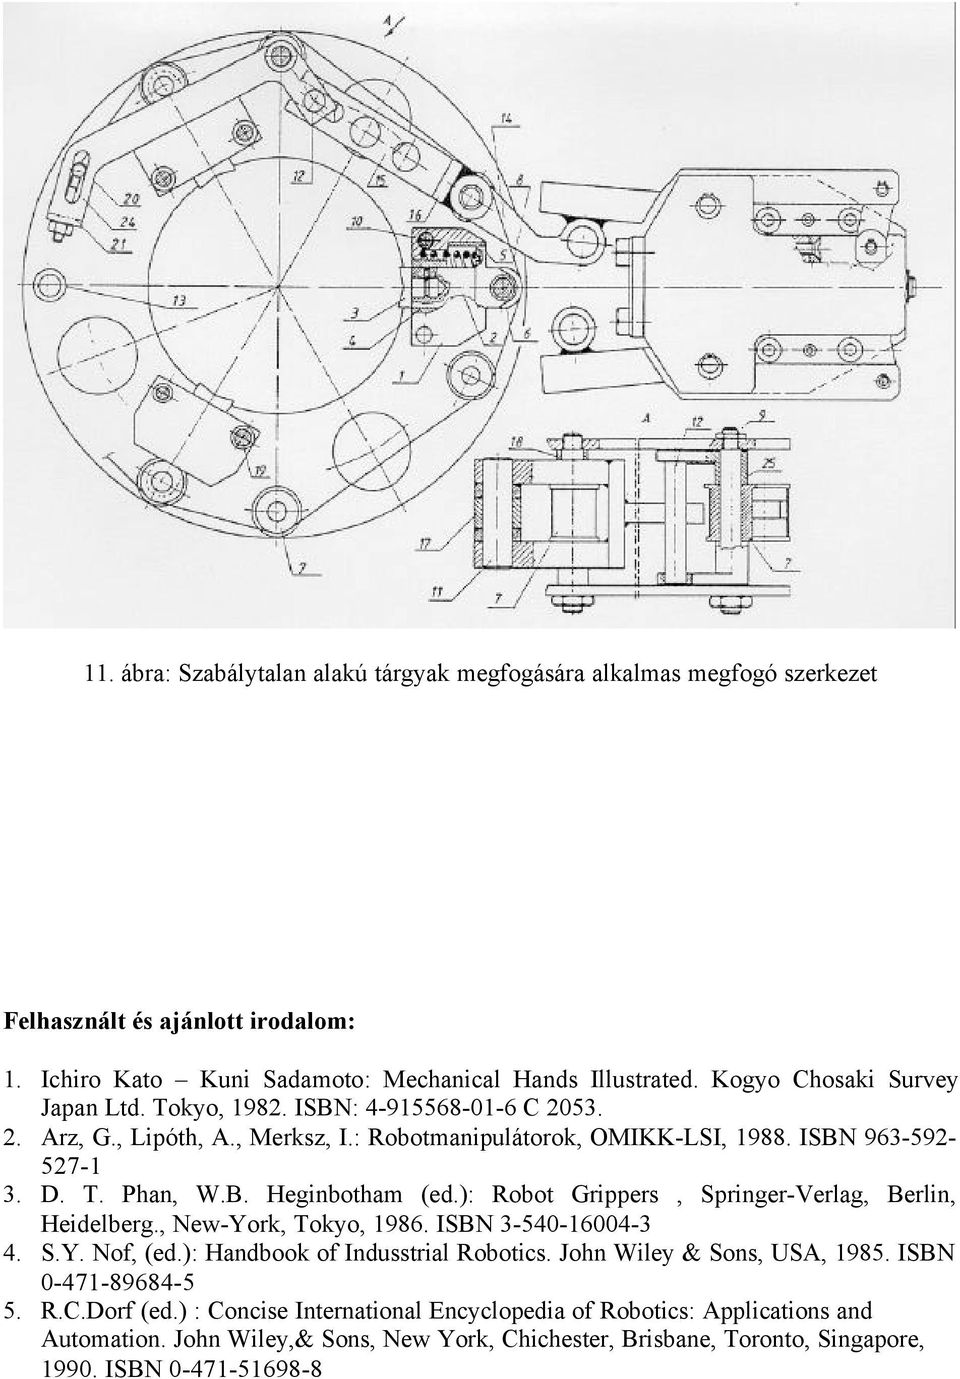 ): Robot Grippers, Springer-Verlag, Berlin, Heidelberg., New-York, Tokyo, 1986. ISBN 3-540-16004-3 4. S.Y. Nof, (ed.): Handbook of Indusstrial Robotics. John Wiley & Sons, USA, 1985.